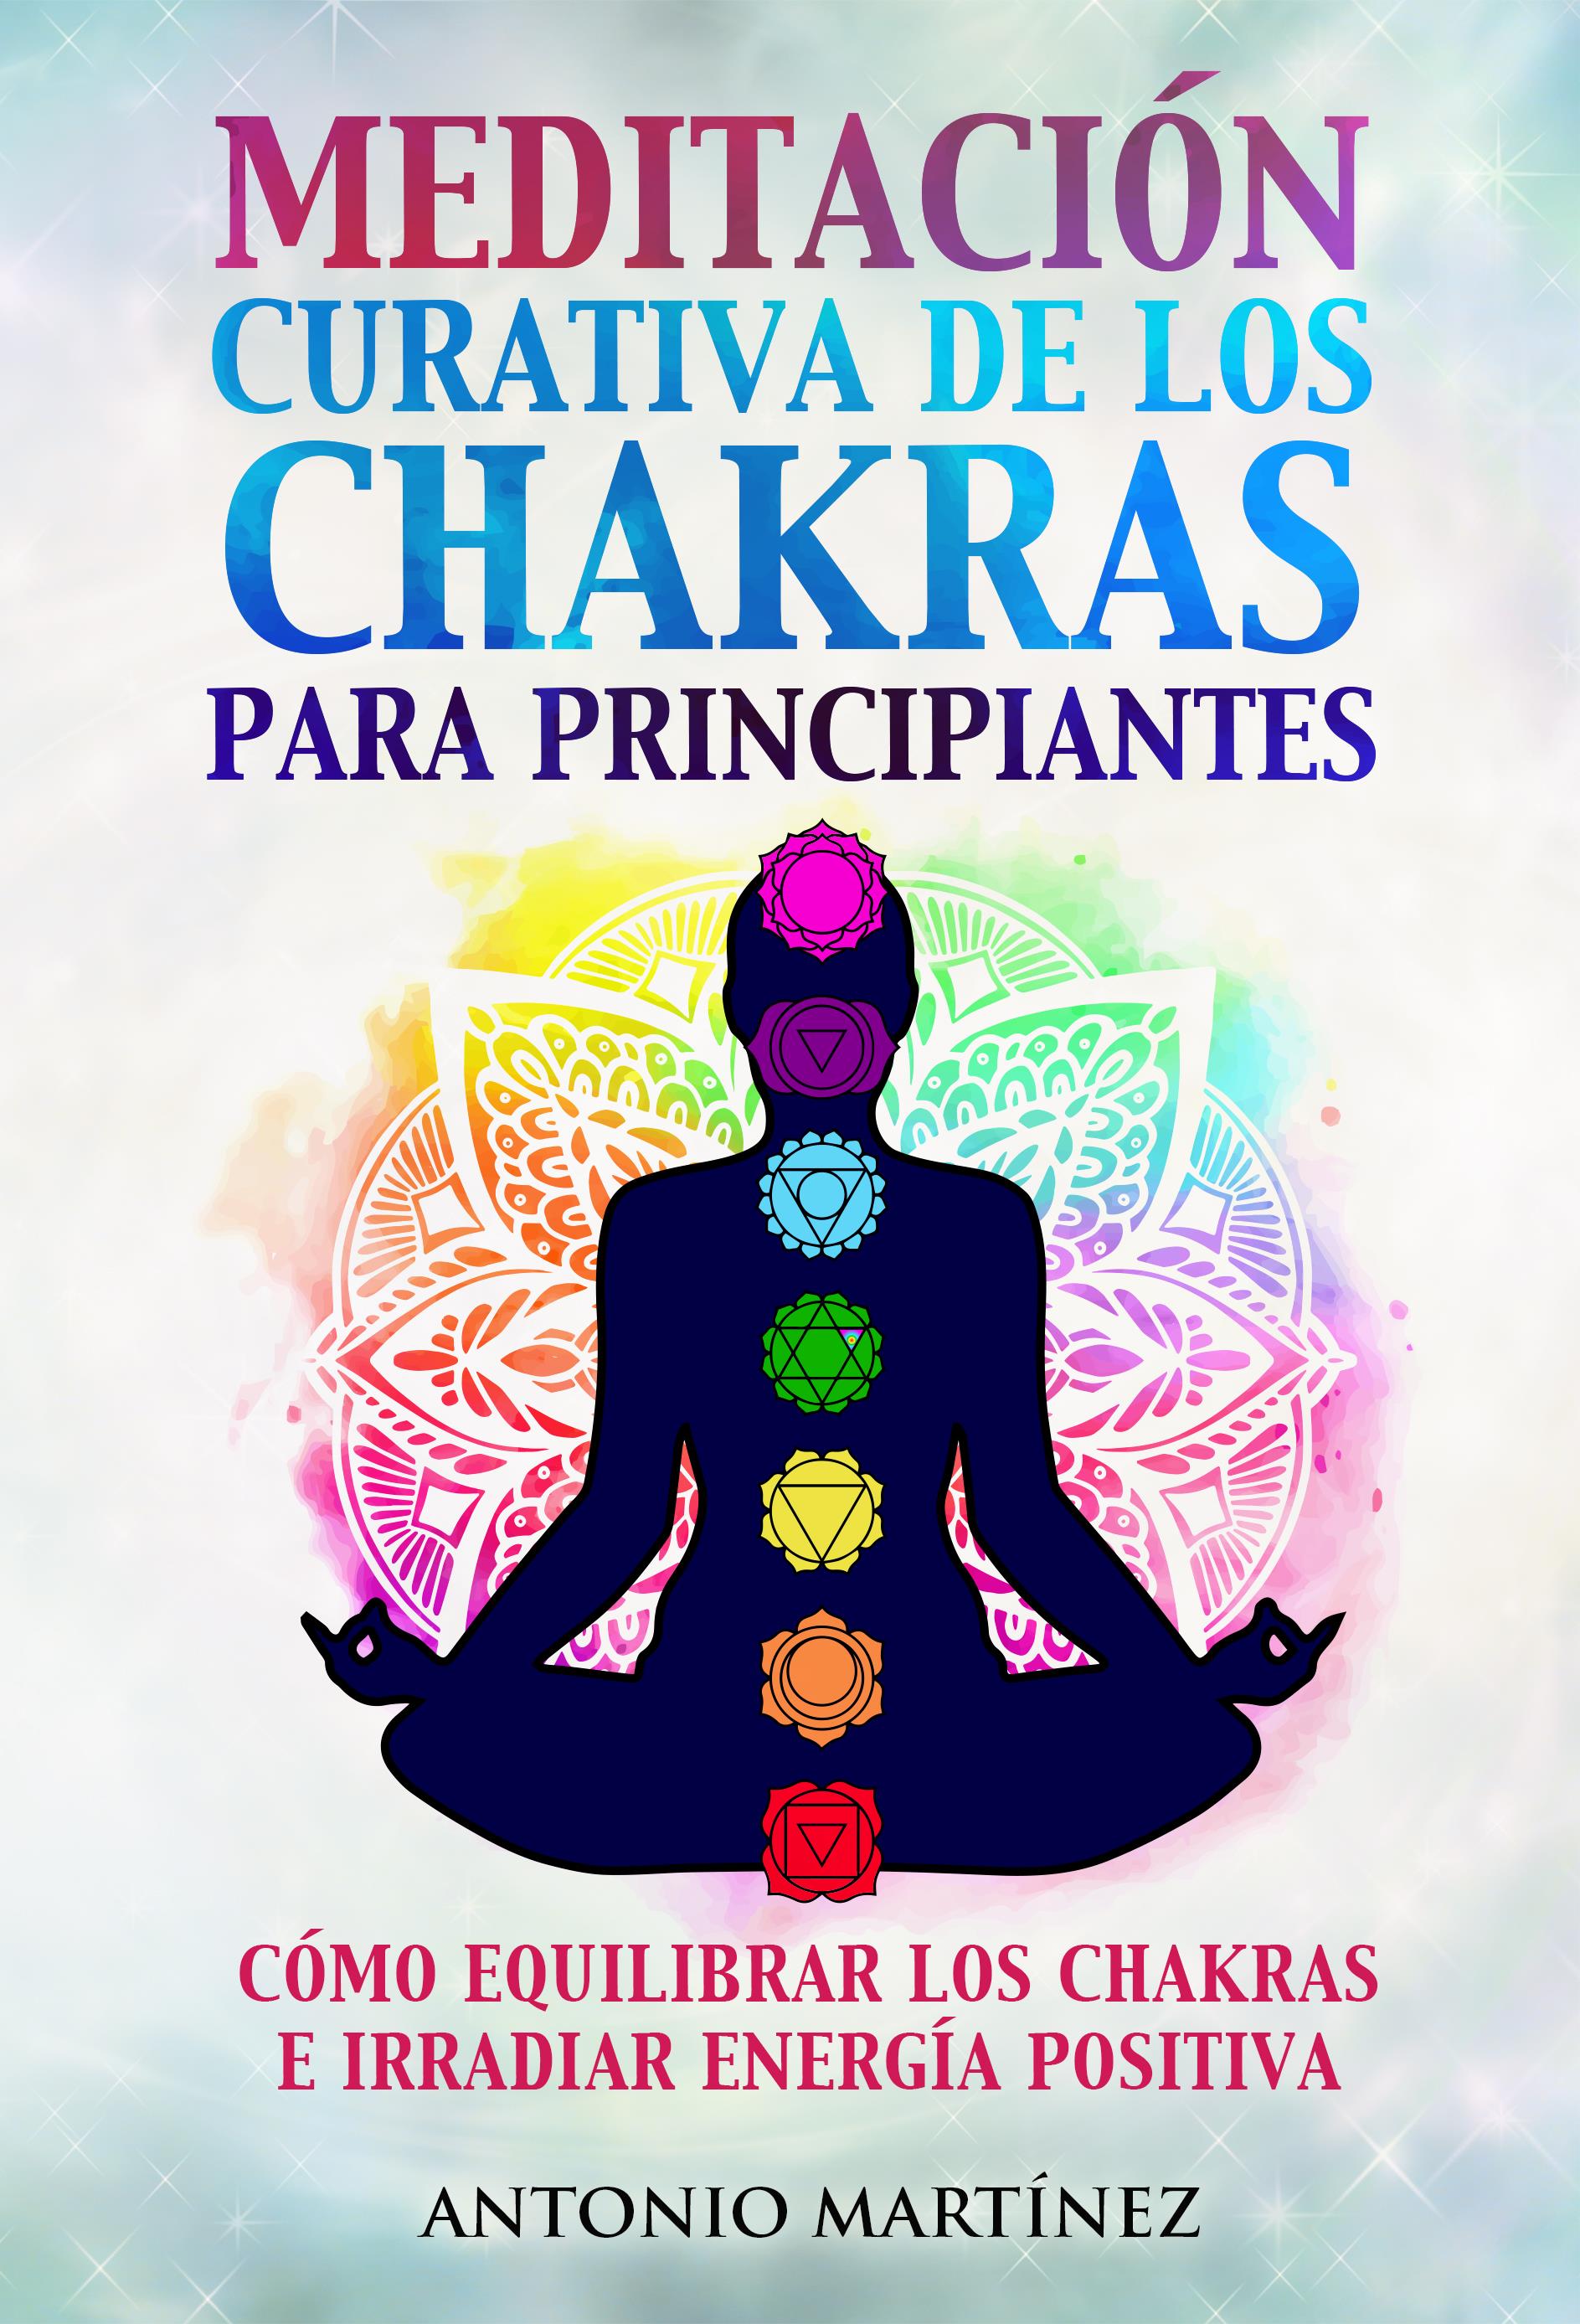 Meditación curativa de los chakras para principiantes. Cómo equilibrar los chakras e irradiar energía positiva